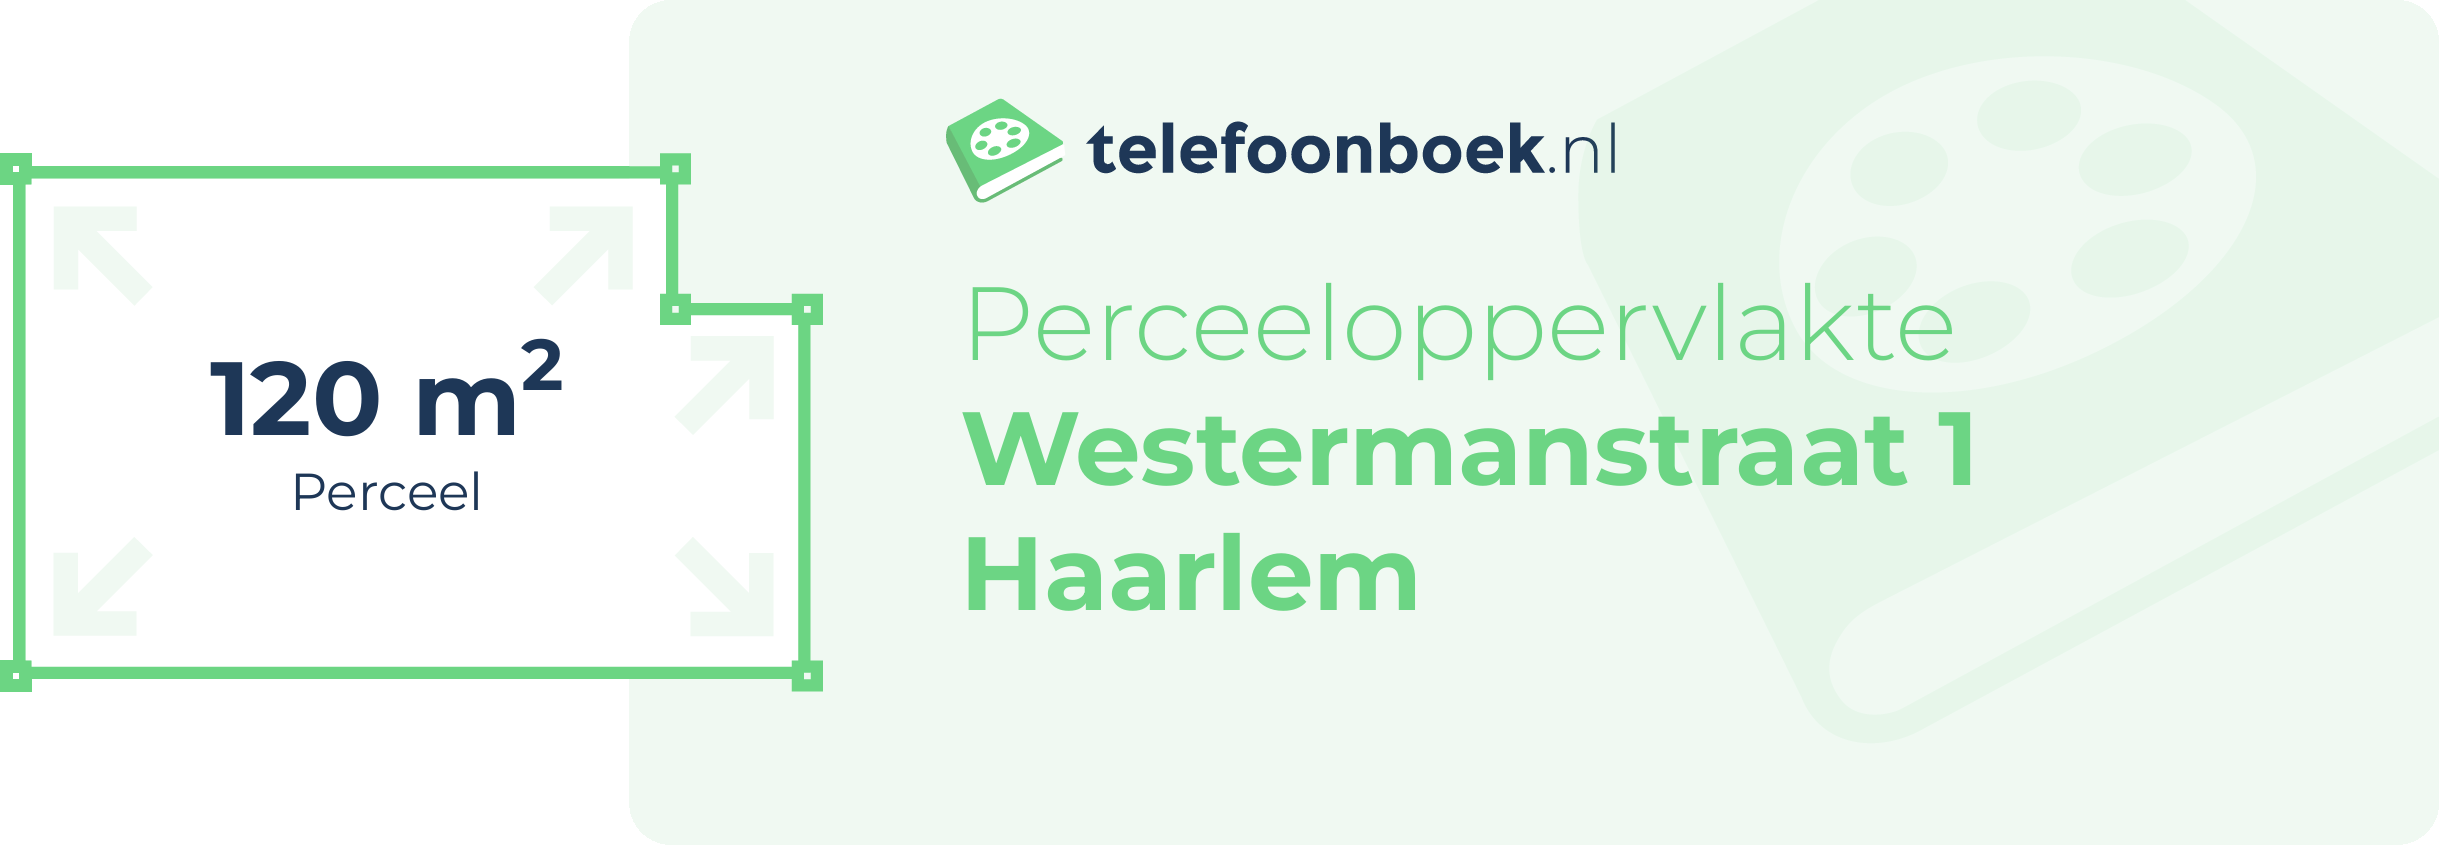 Perceeloppervlakte Westermanstraat 1 Haarlem